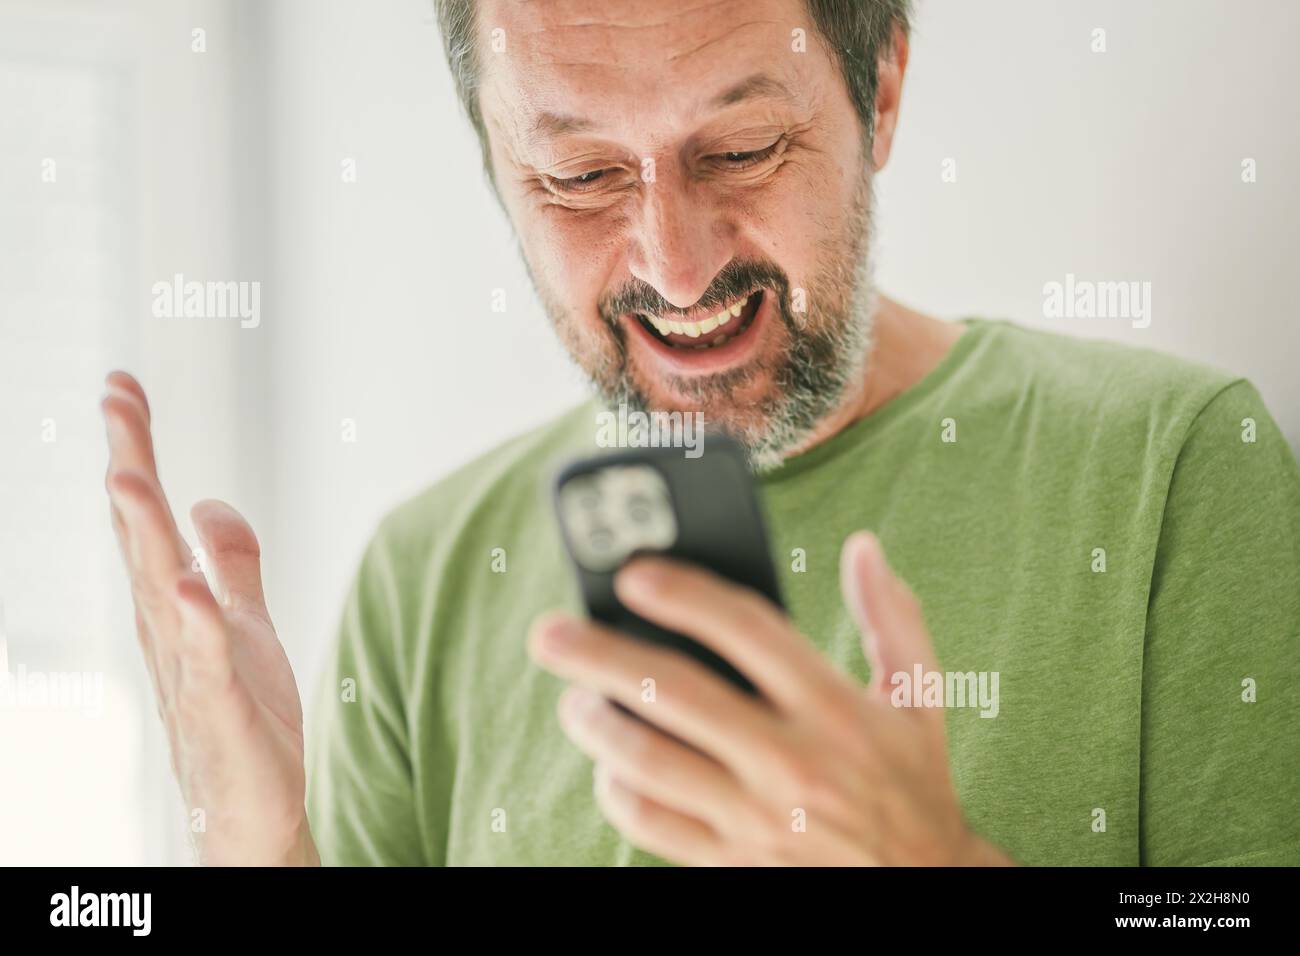 Homme heureux a reçu un message texte satisfaisant sur smartphone mobile, focus sélectif Banque D'Images